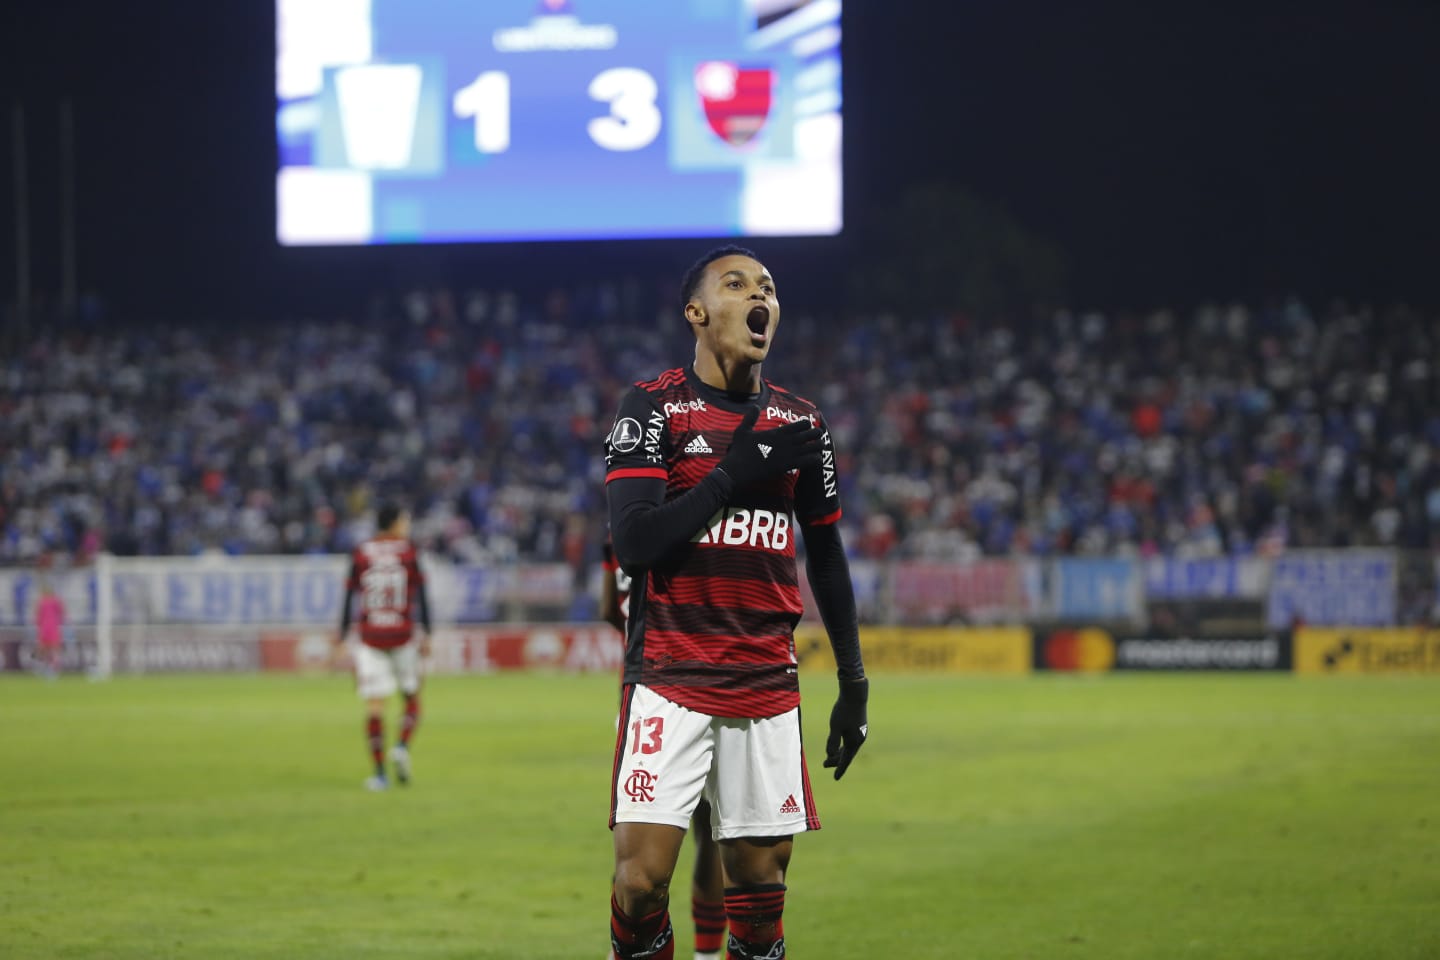 [COMENTE] Como você avalia o desempenho do Flamengo na vitória diante da Universidad Católica?